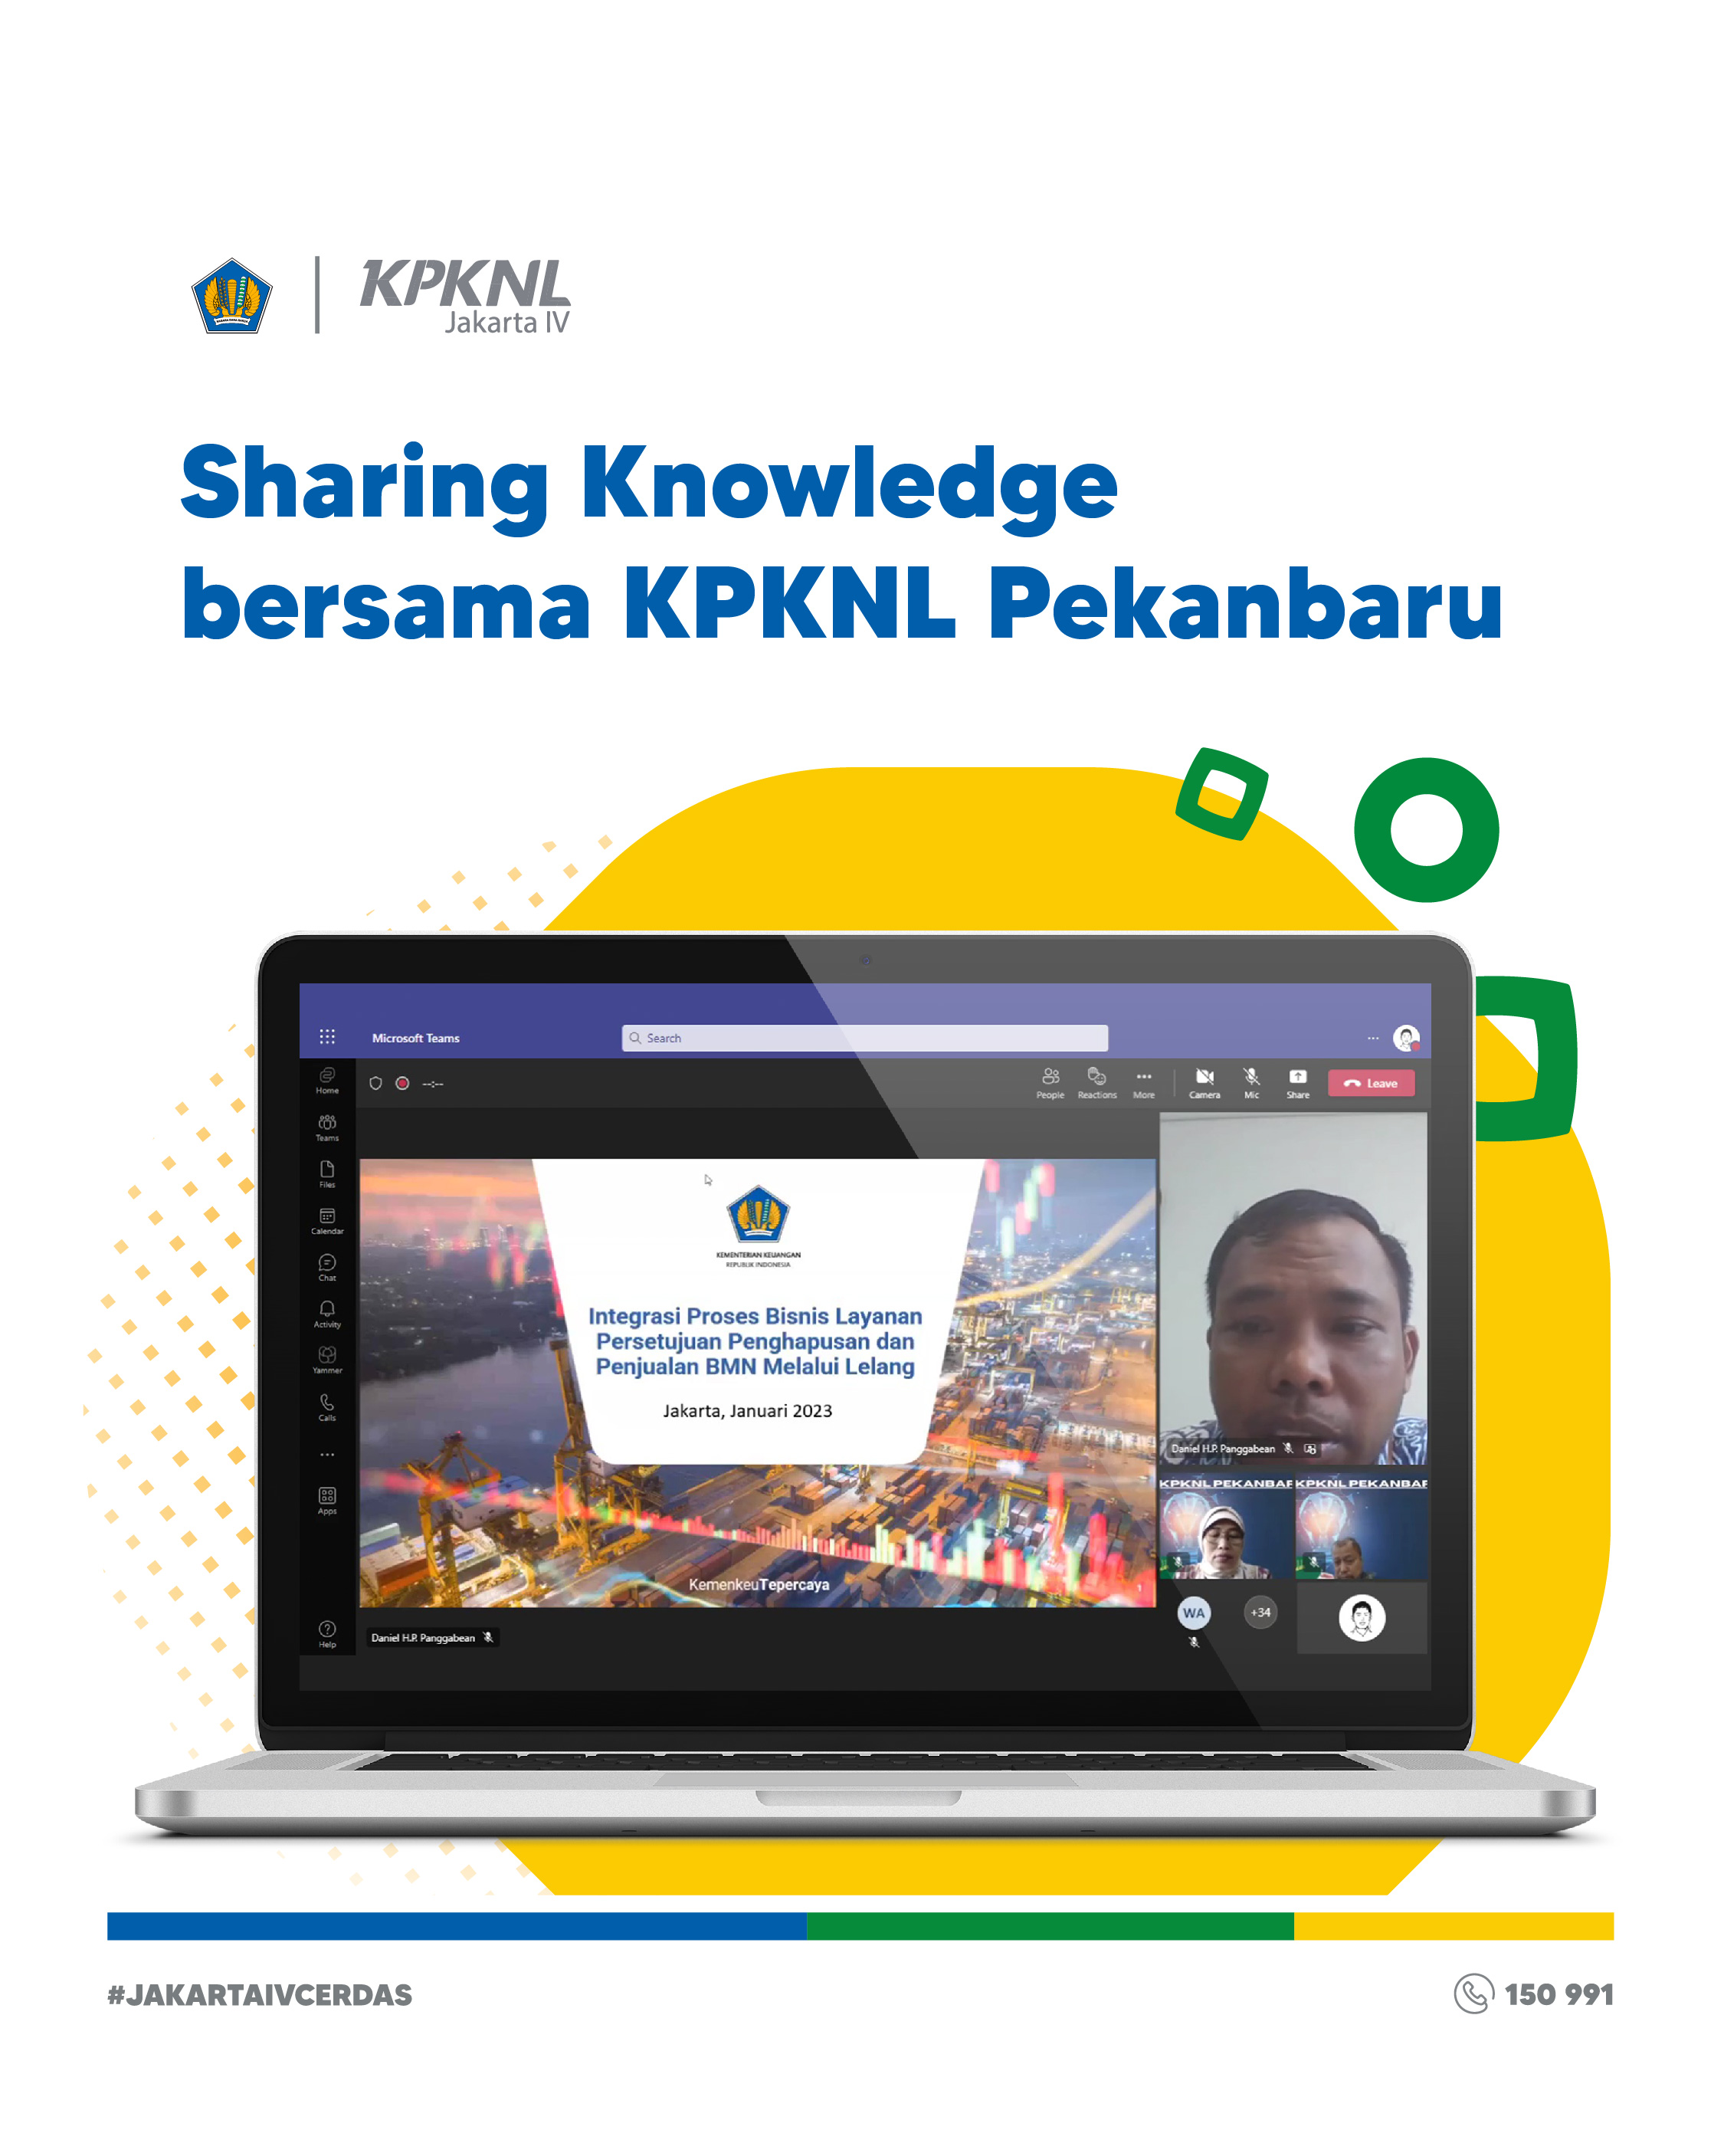 Sharing Knowledge Integrasi Proses Bisnis dalam Jumat Bertutur KPKNL Pekanbaru